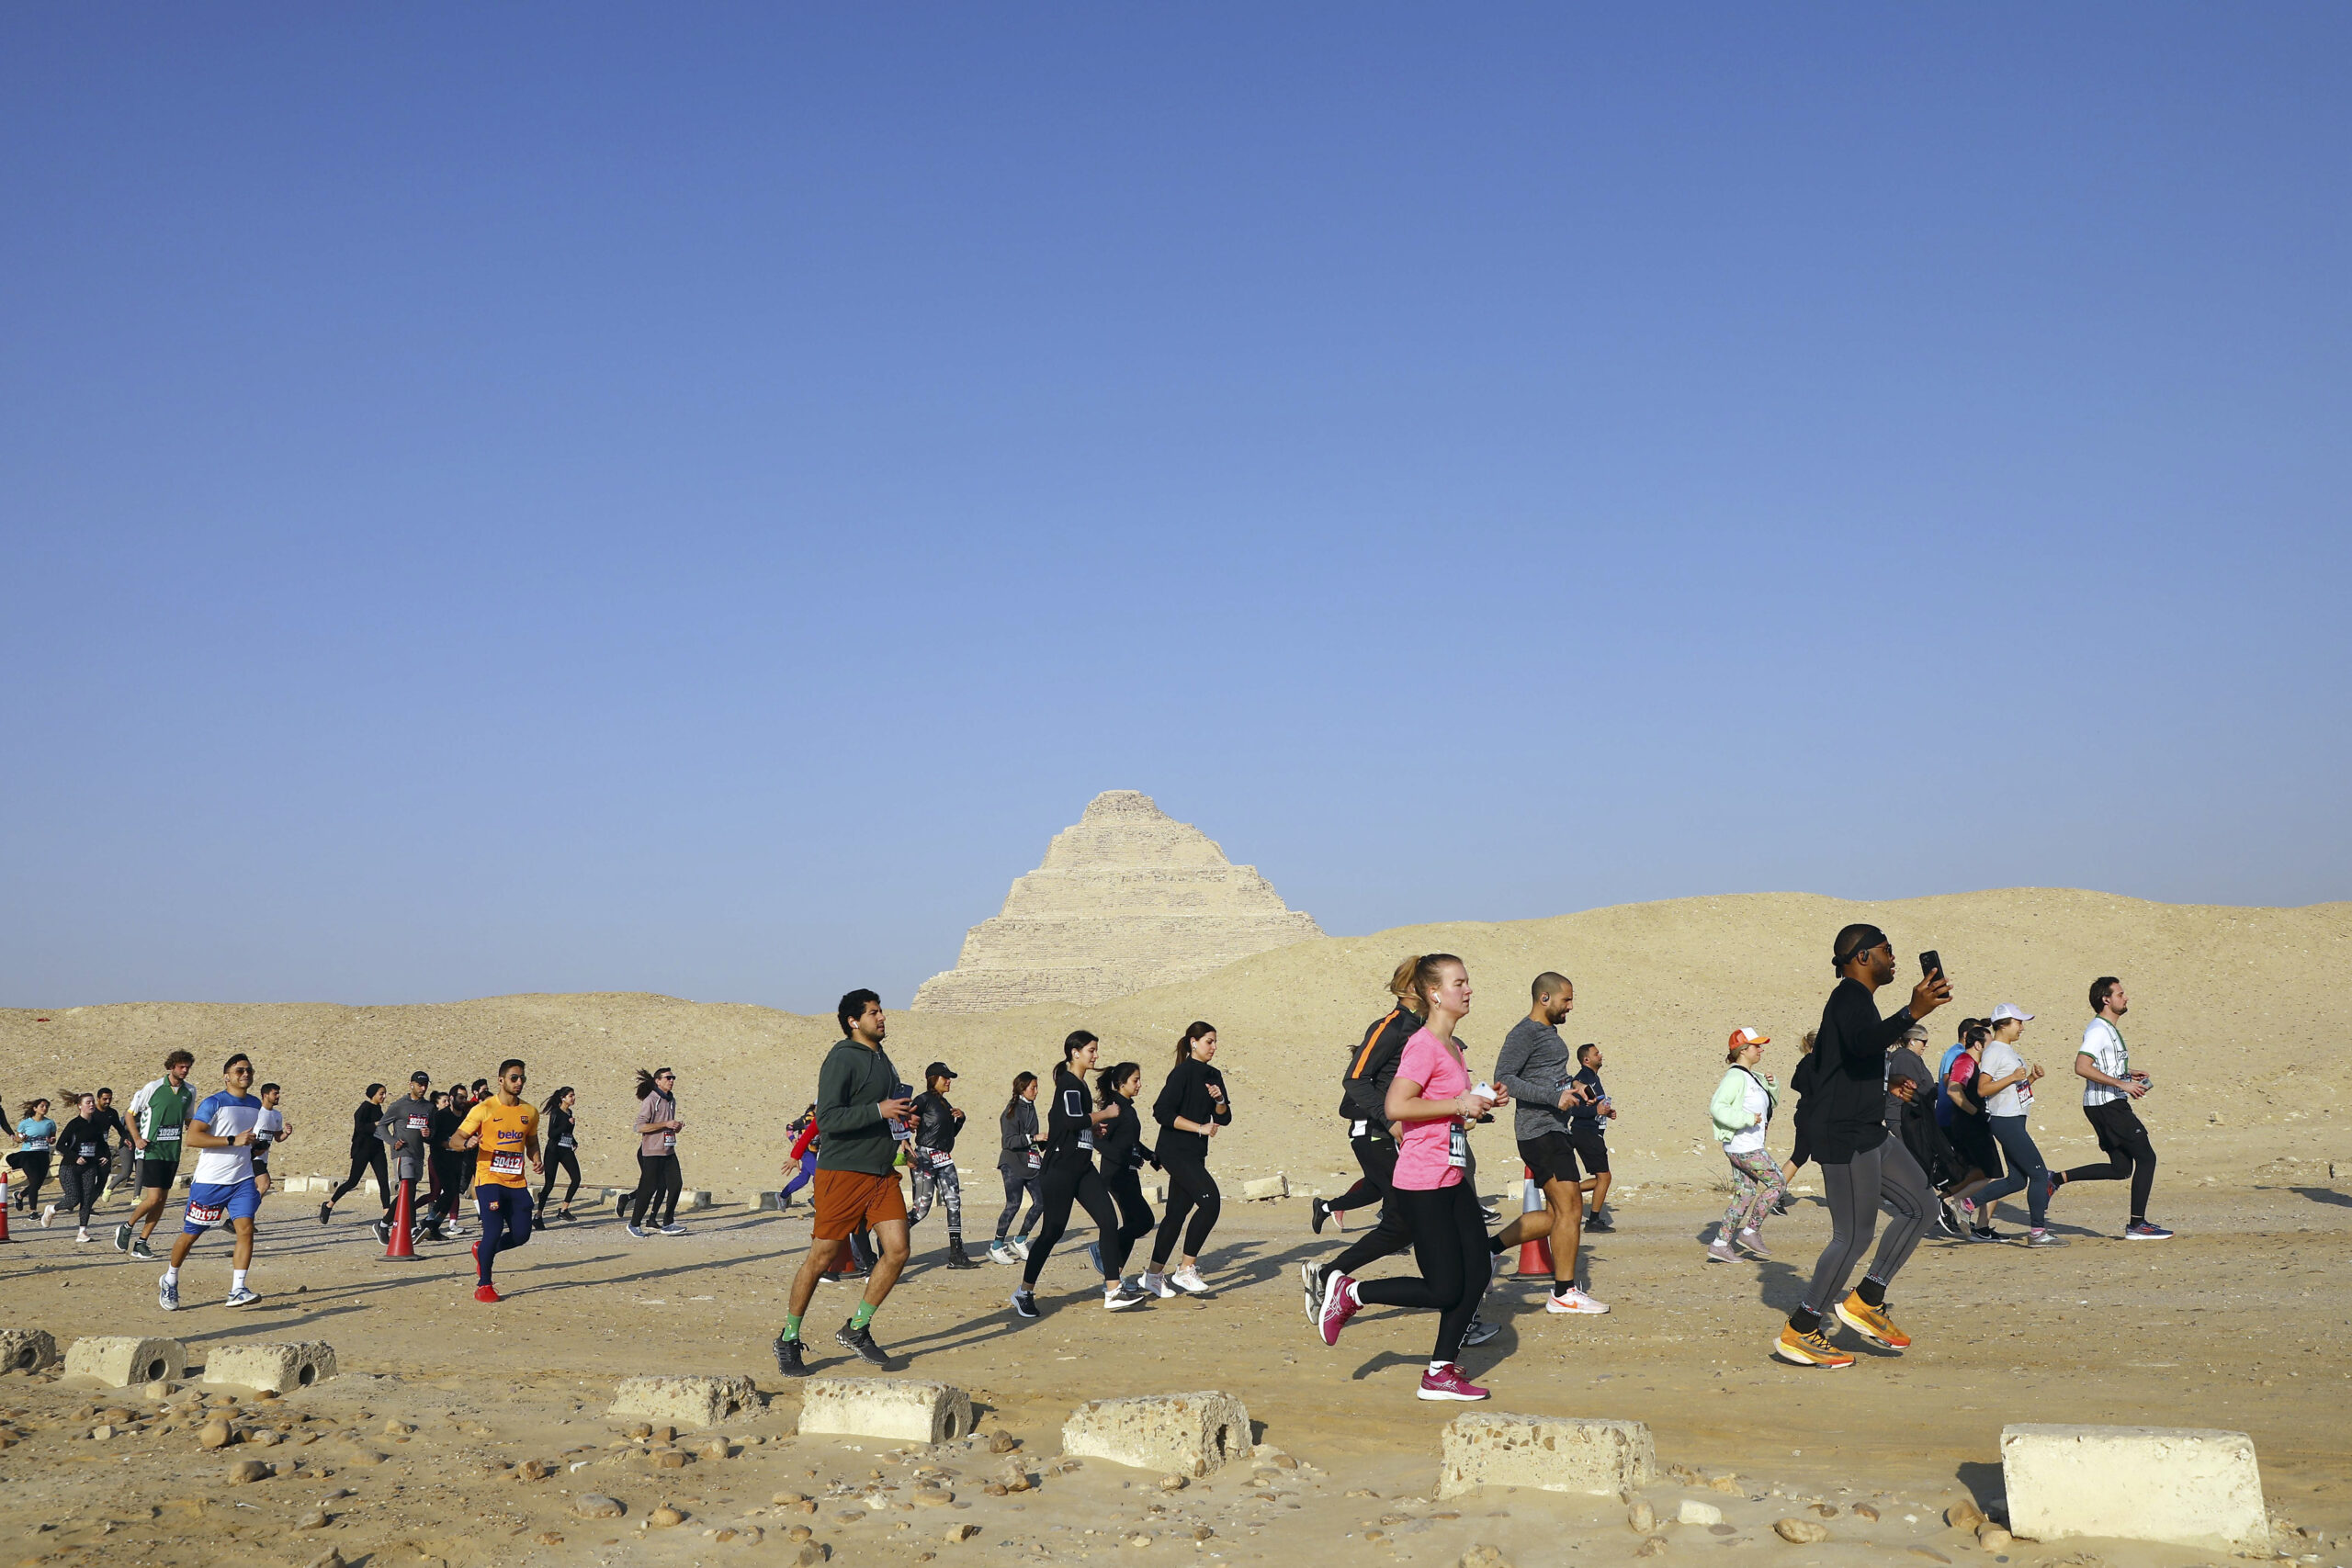 นักวิ่งประชันฝีเท้างาน 'วิ่งพีระมิดซัคคารา' ในอียิปต์